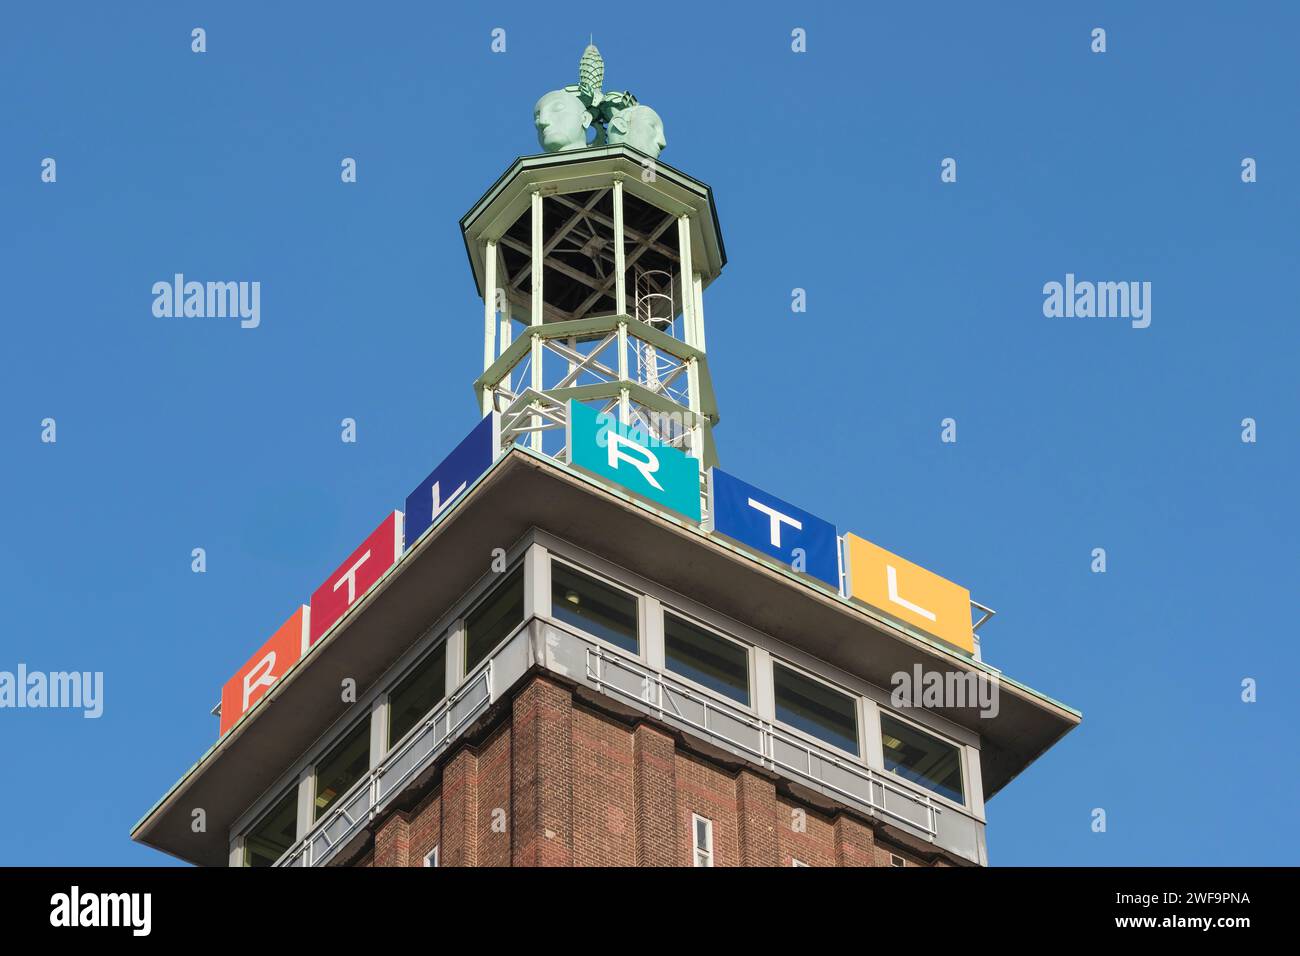 Messeturm mit den Logos von RTL Radio Tele Luxemburg am Hauptsitz des privaten Rundfunks im Kölner Stadtteil Deutz. Stockfoto